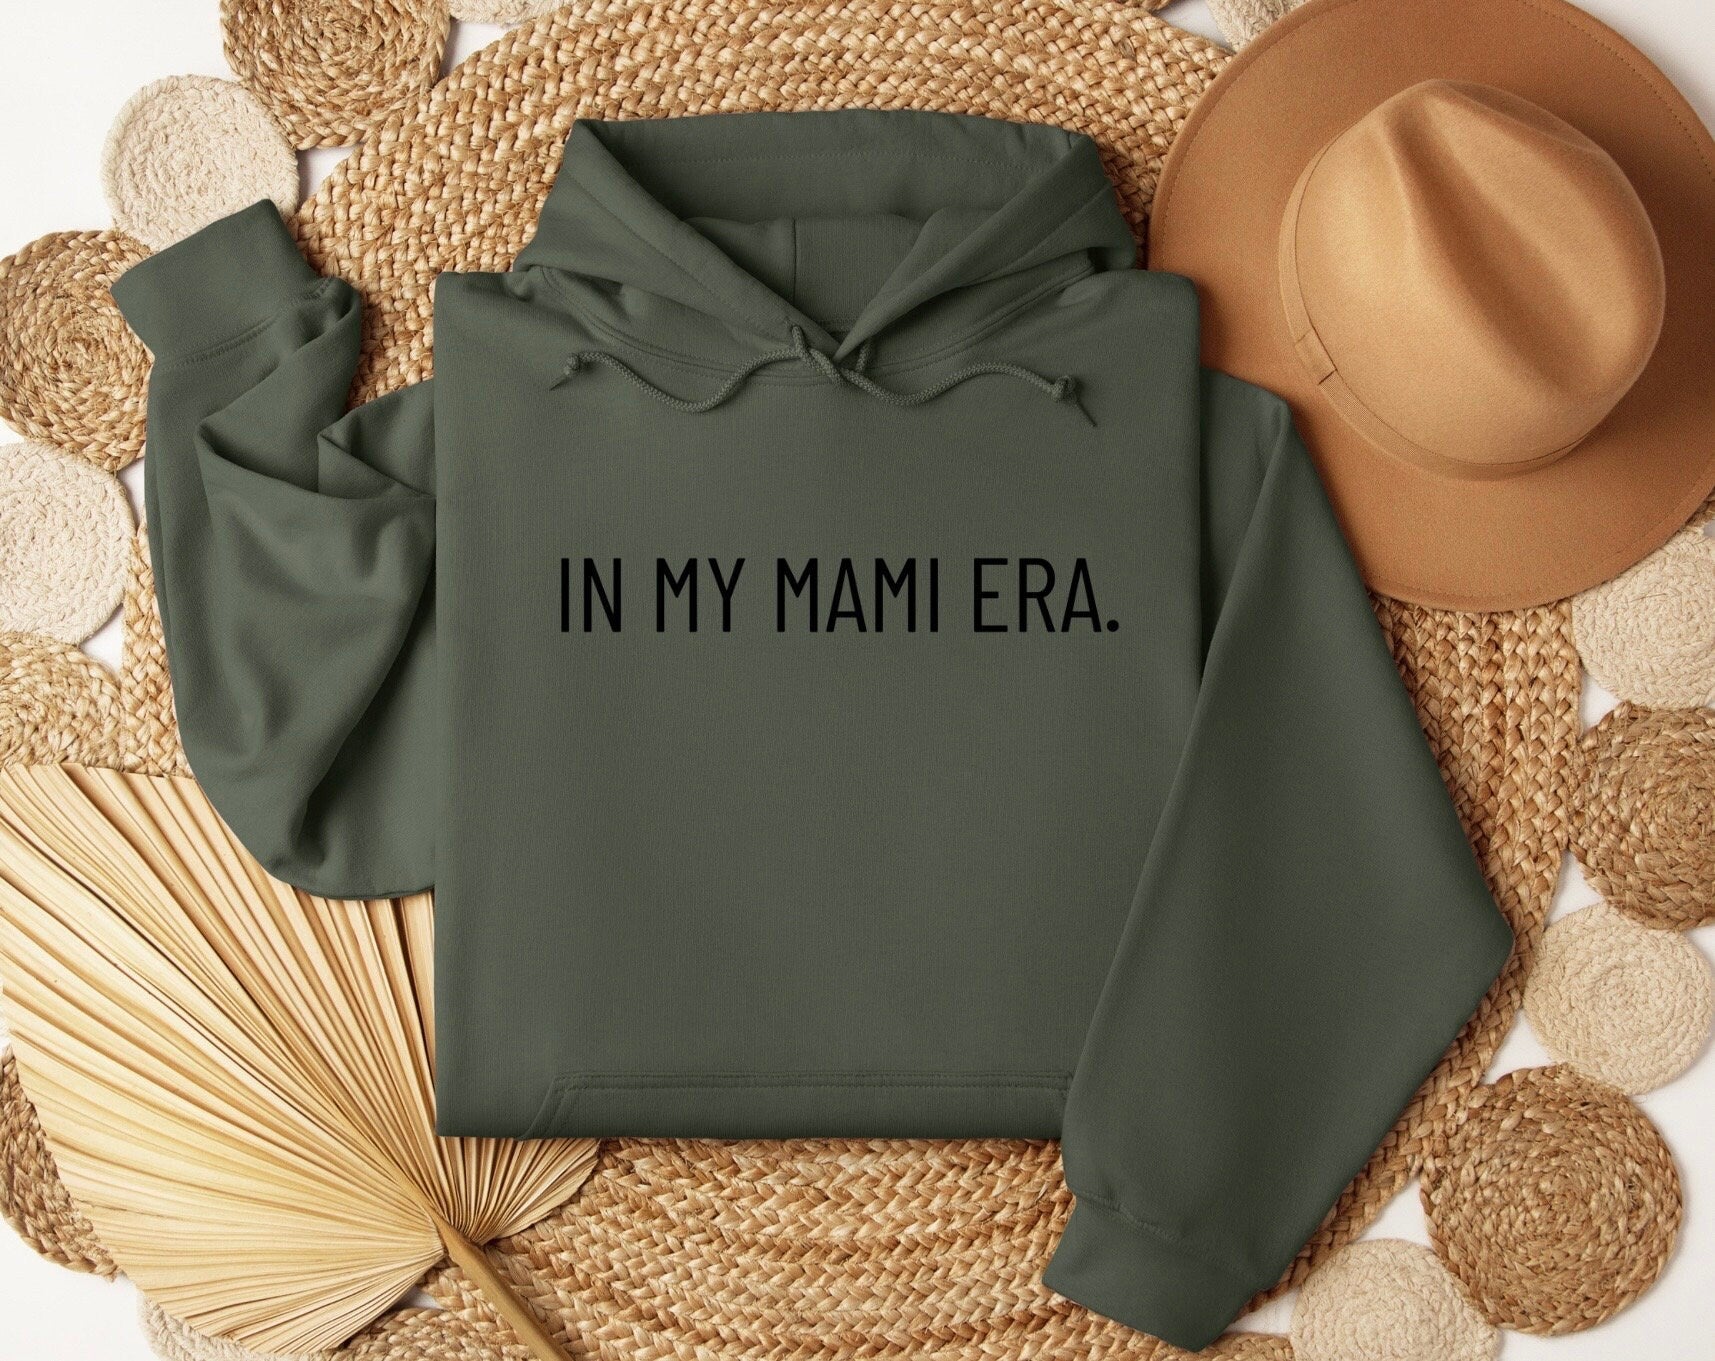 In My Mami Era Sweatshirt, In My Mami Era Shirt, In My Mami Era Crewneck, In My Mami Era Sweater, Oversized Sweater, Comfy Sweatshirt, Gift